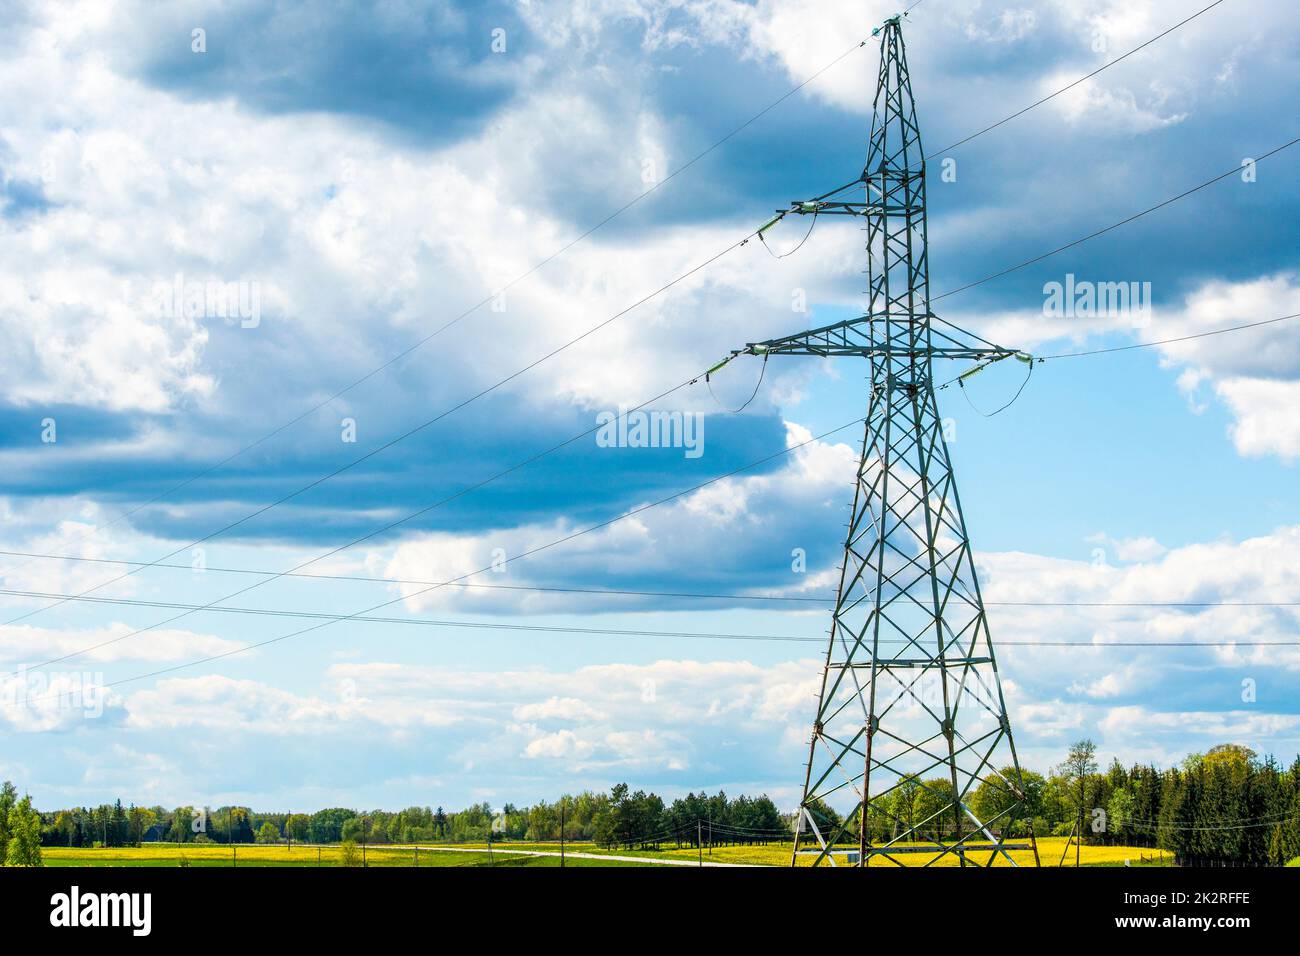 Lignes de transmission de puissance et grand pylône d'électricité contre le ciel bleu dans la campagne Banque D'Images